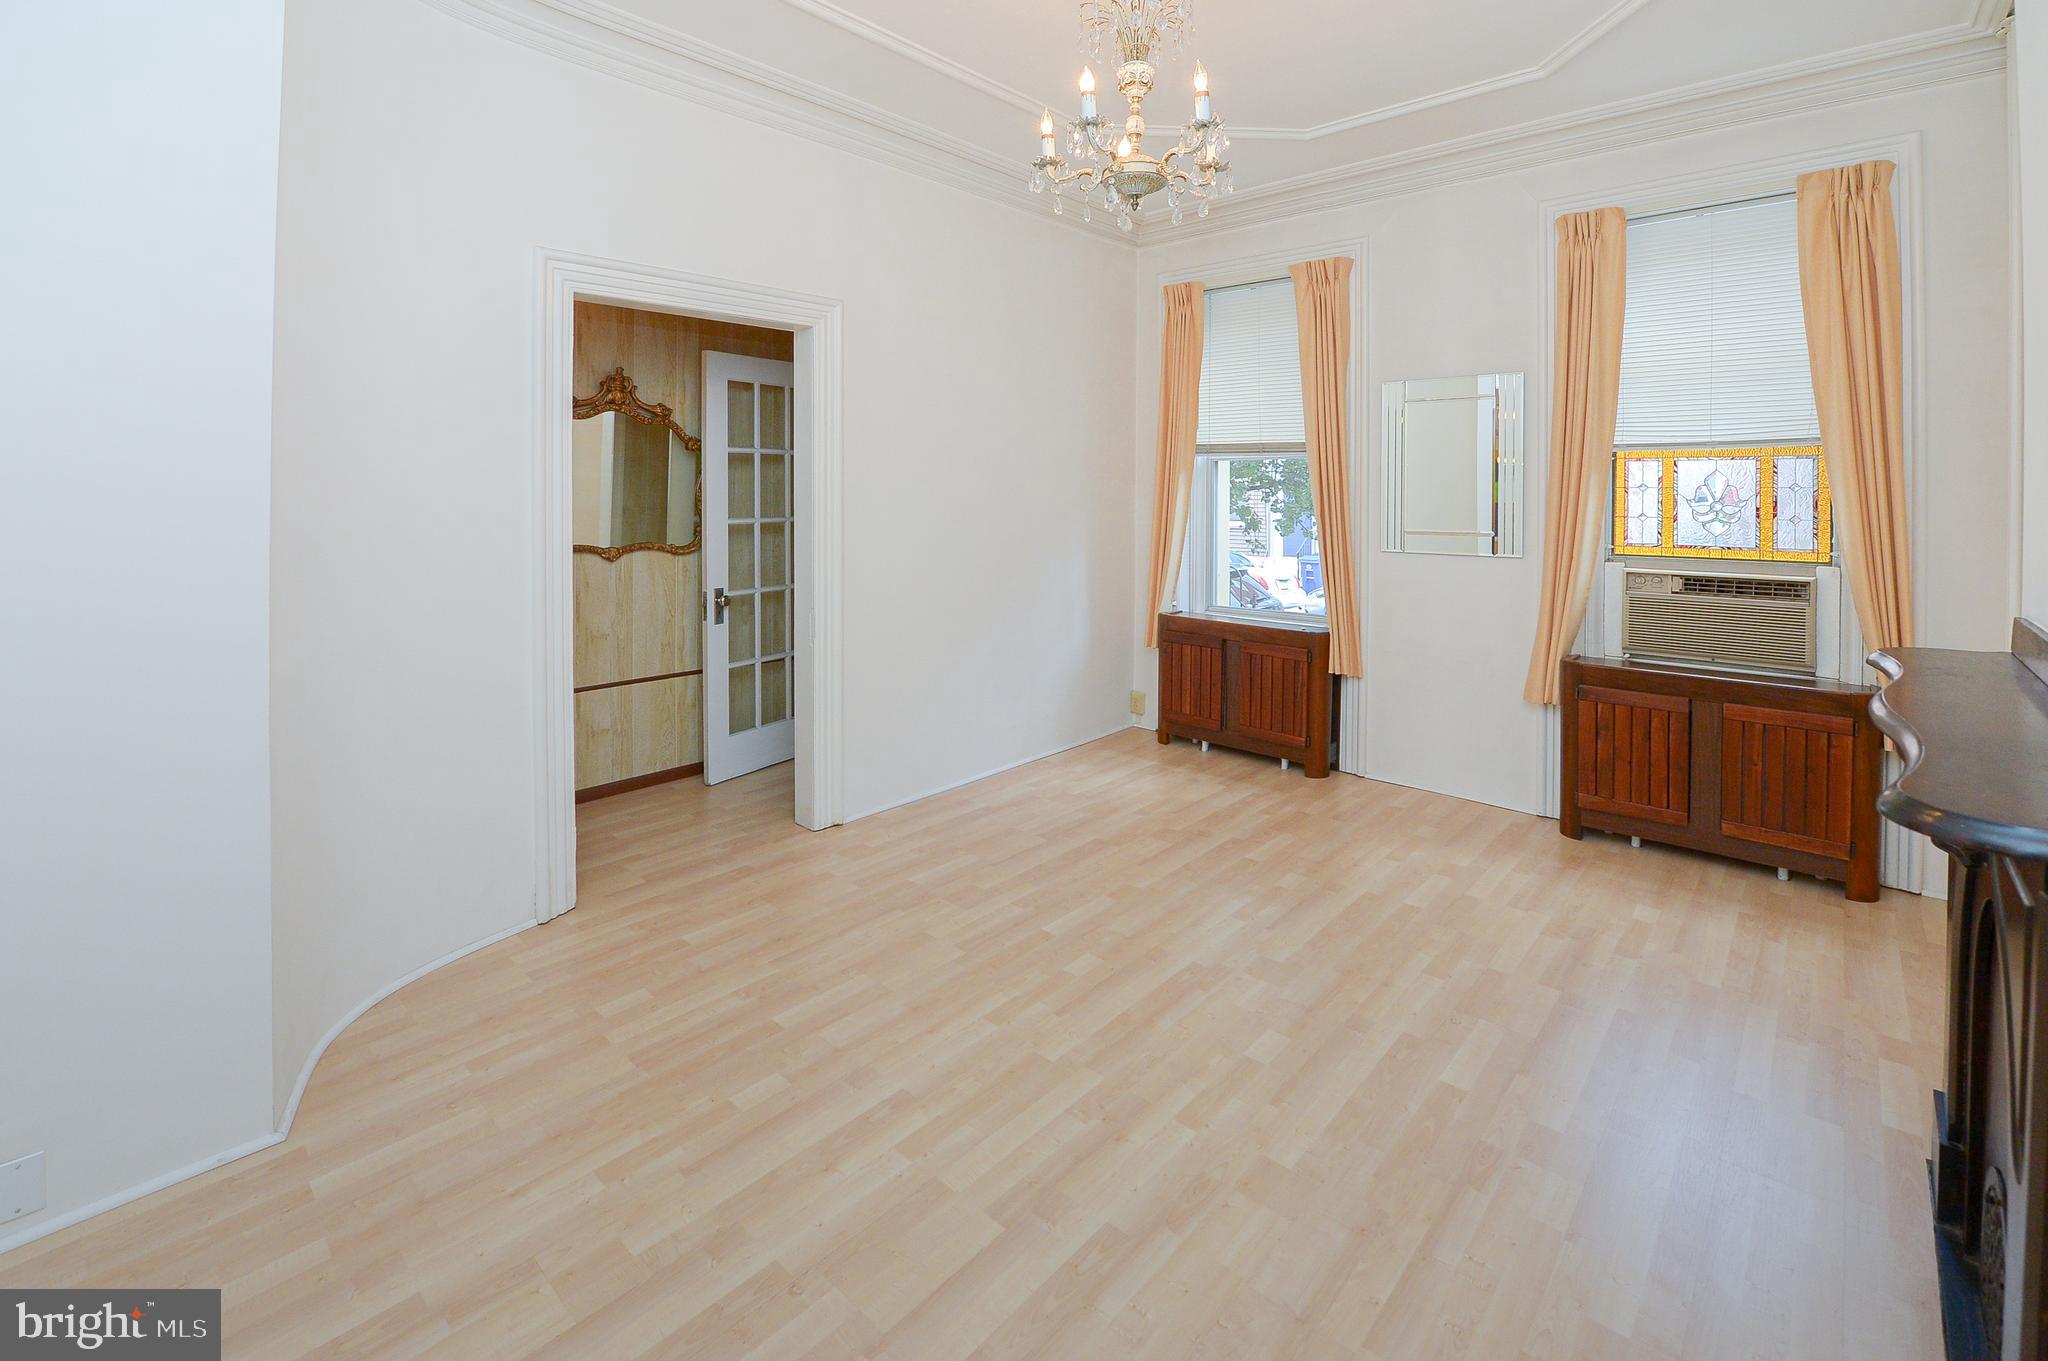 wooden floor chandelier and windows in a room